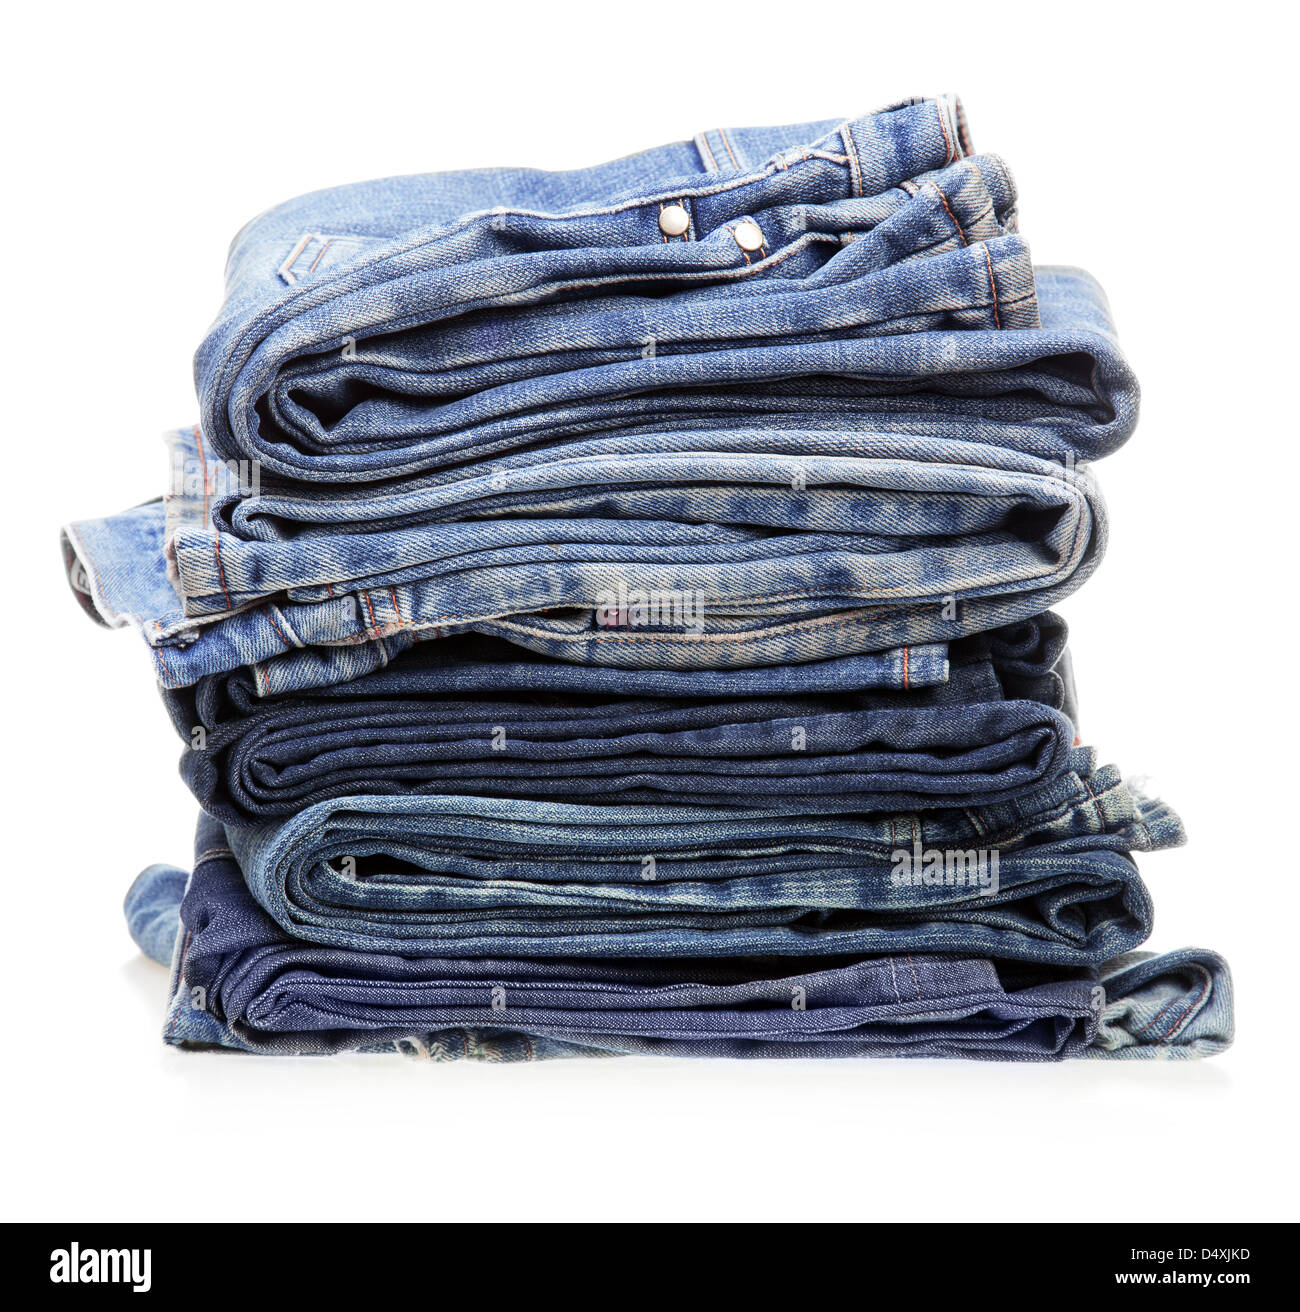 Stapel von Jeans Kleidung auf weißem Hintergrund Stockfotografie - Alamy